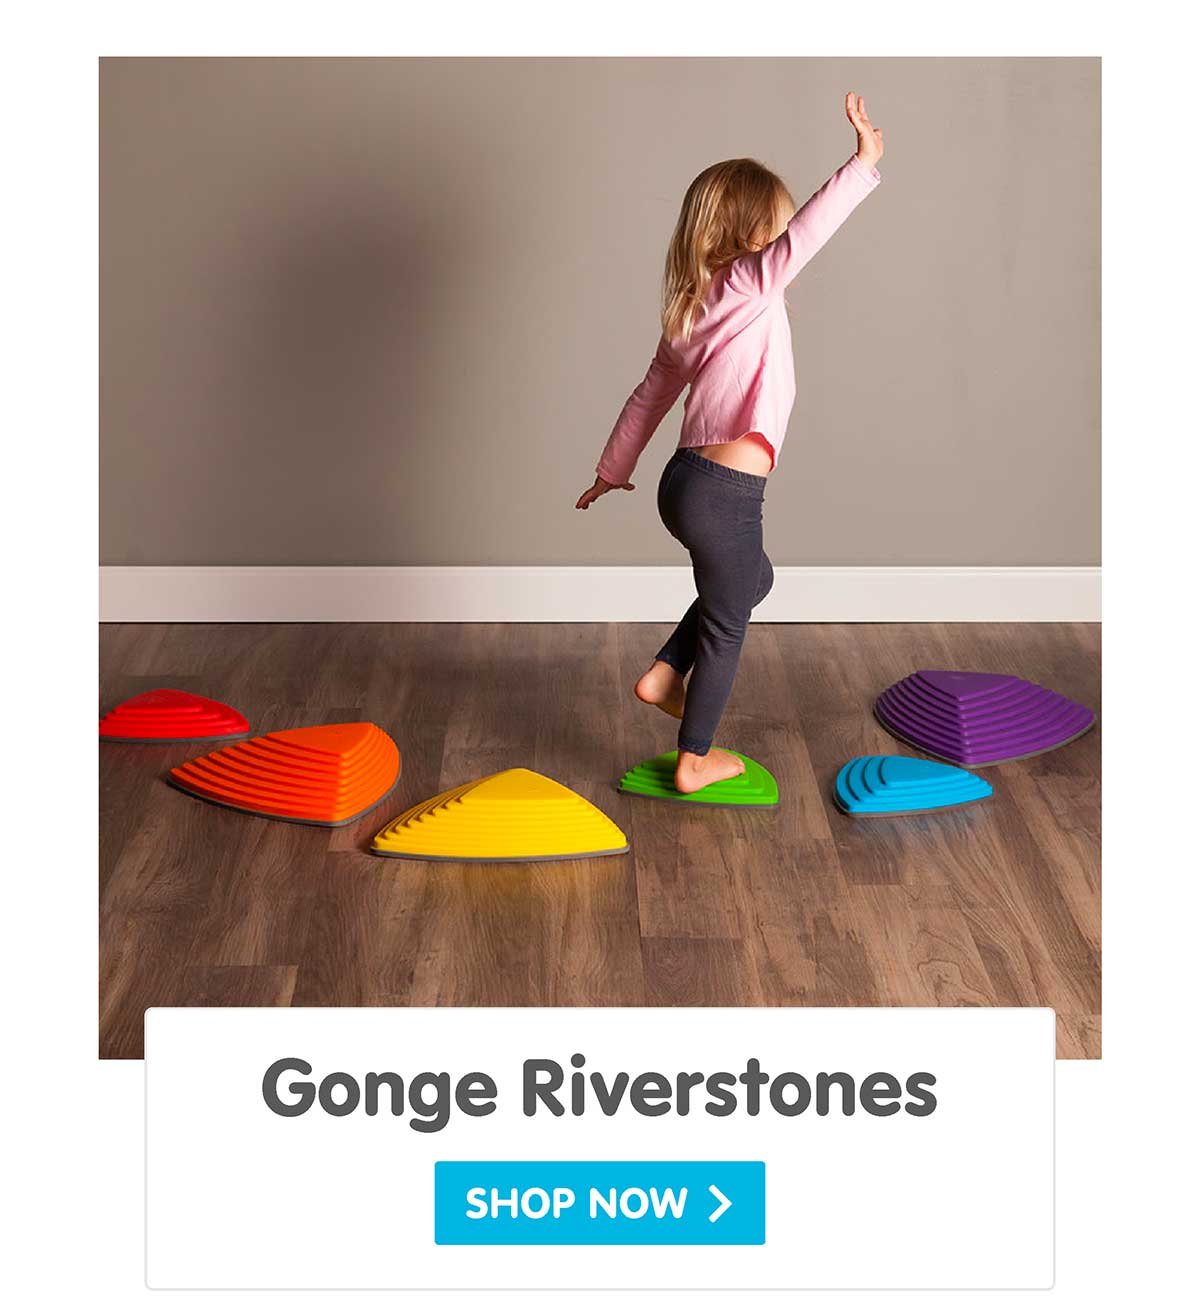 Gonge Riverstones